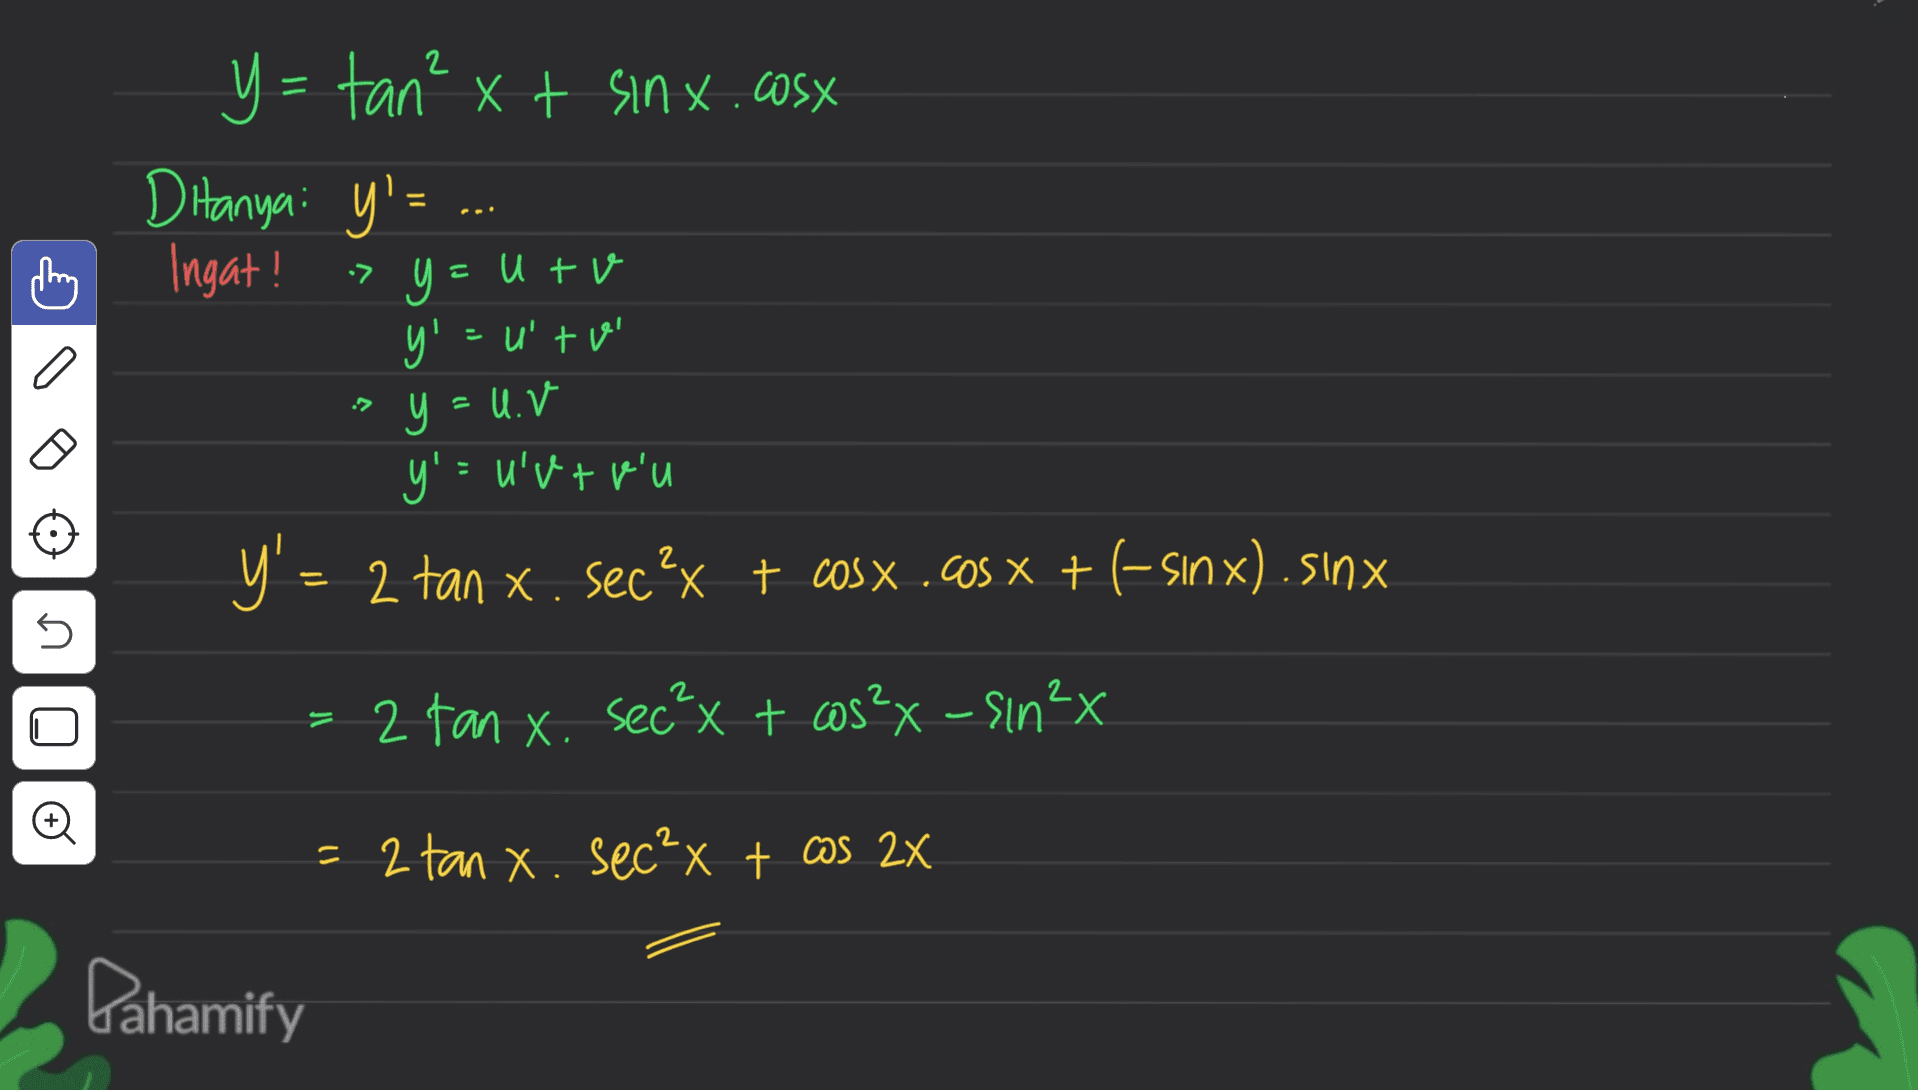 y= tan² xt sinx.cosx D Hanya: y'= . Ingat! > y = = utv y'=uto у y u y': u'V + p'u D' = 2 Tan X. Secºx t COSX . OS X +(-Sax).sinx 5 2 tan x. sec²x + cos²x - sin²x O = 2 tan x. sec²x + cas 2x Pahamify 